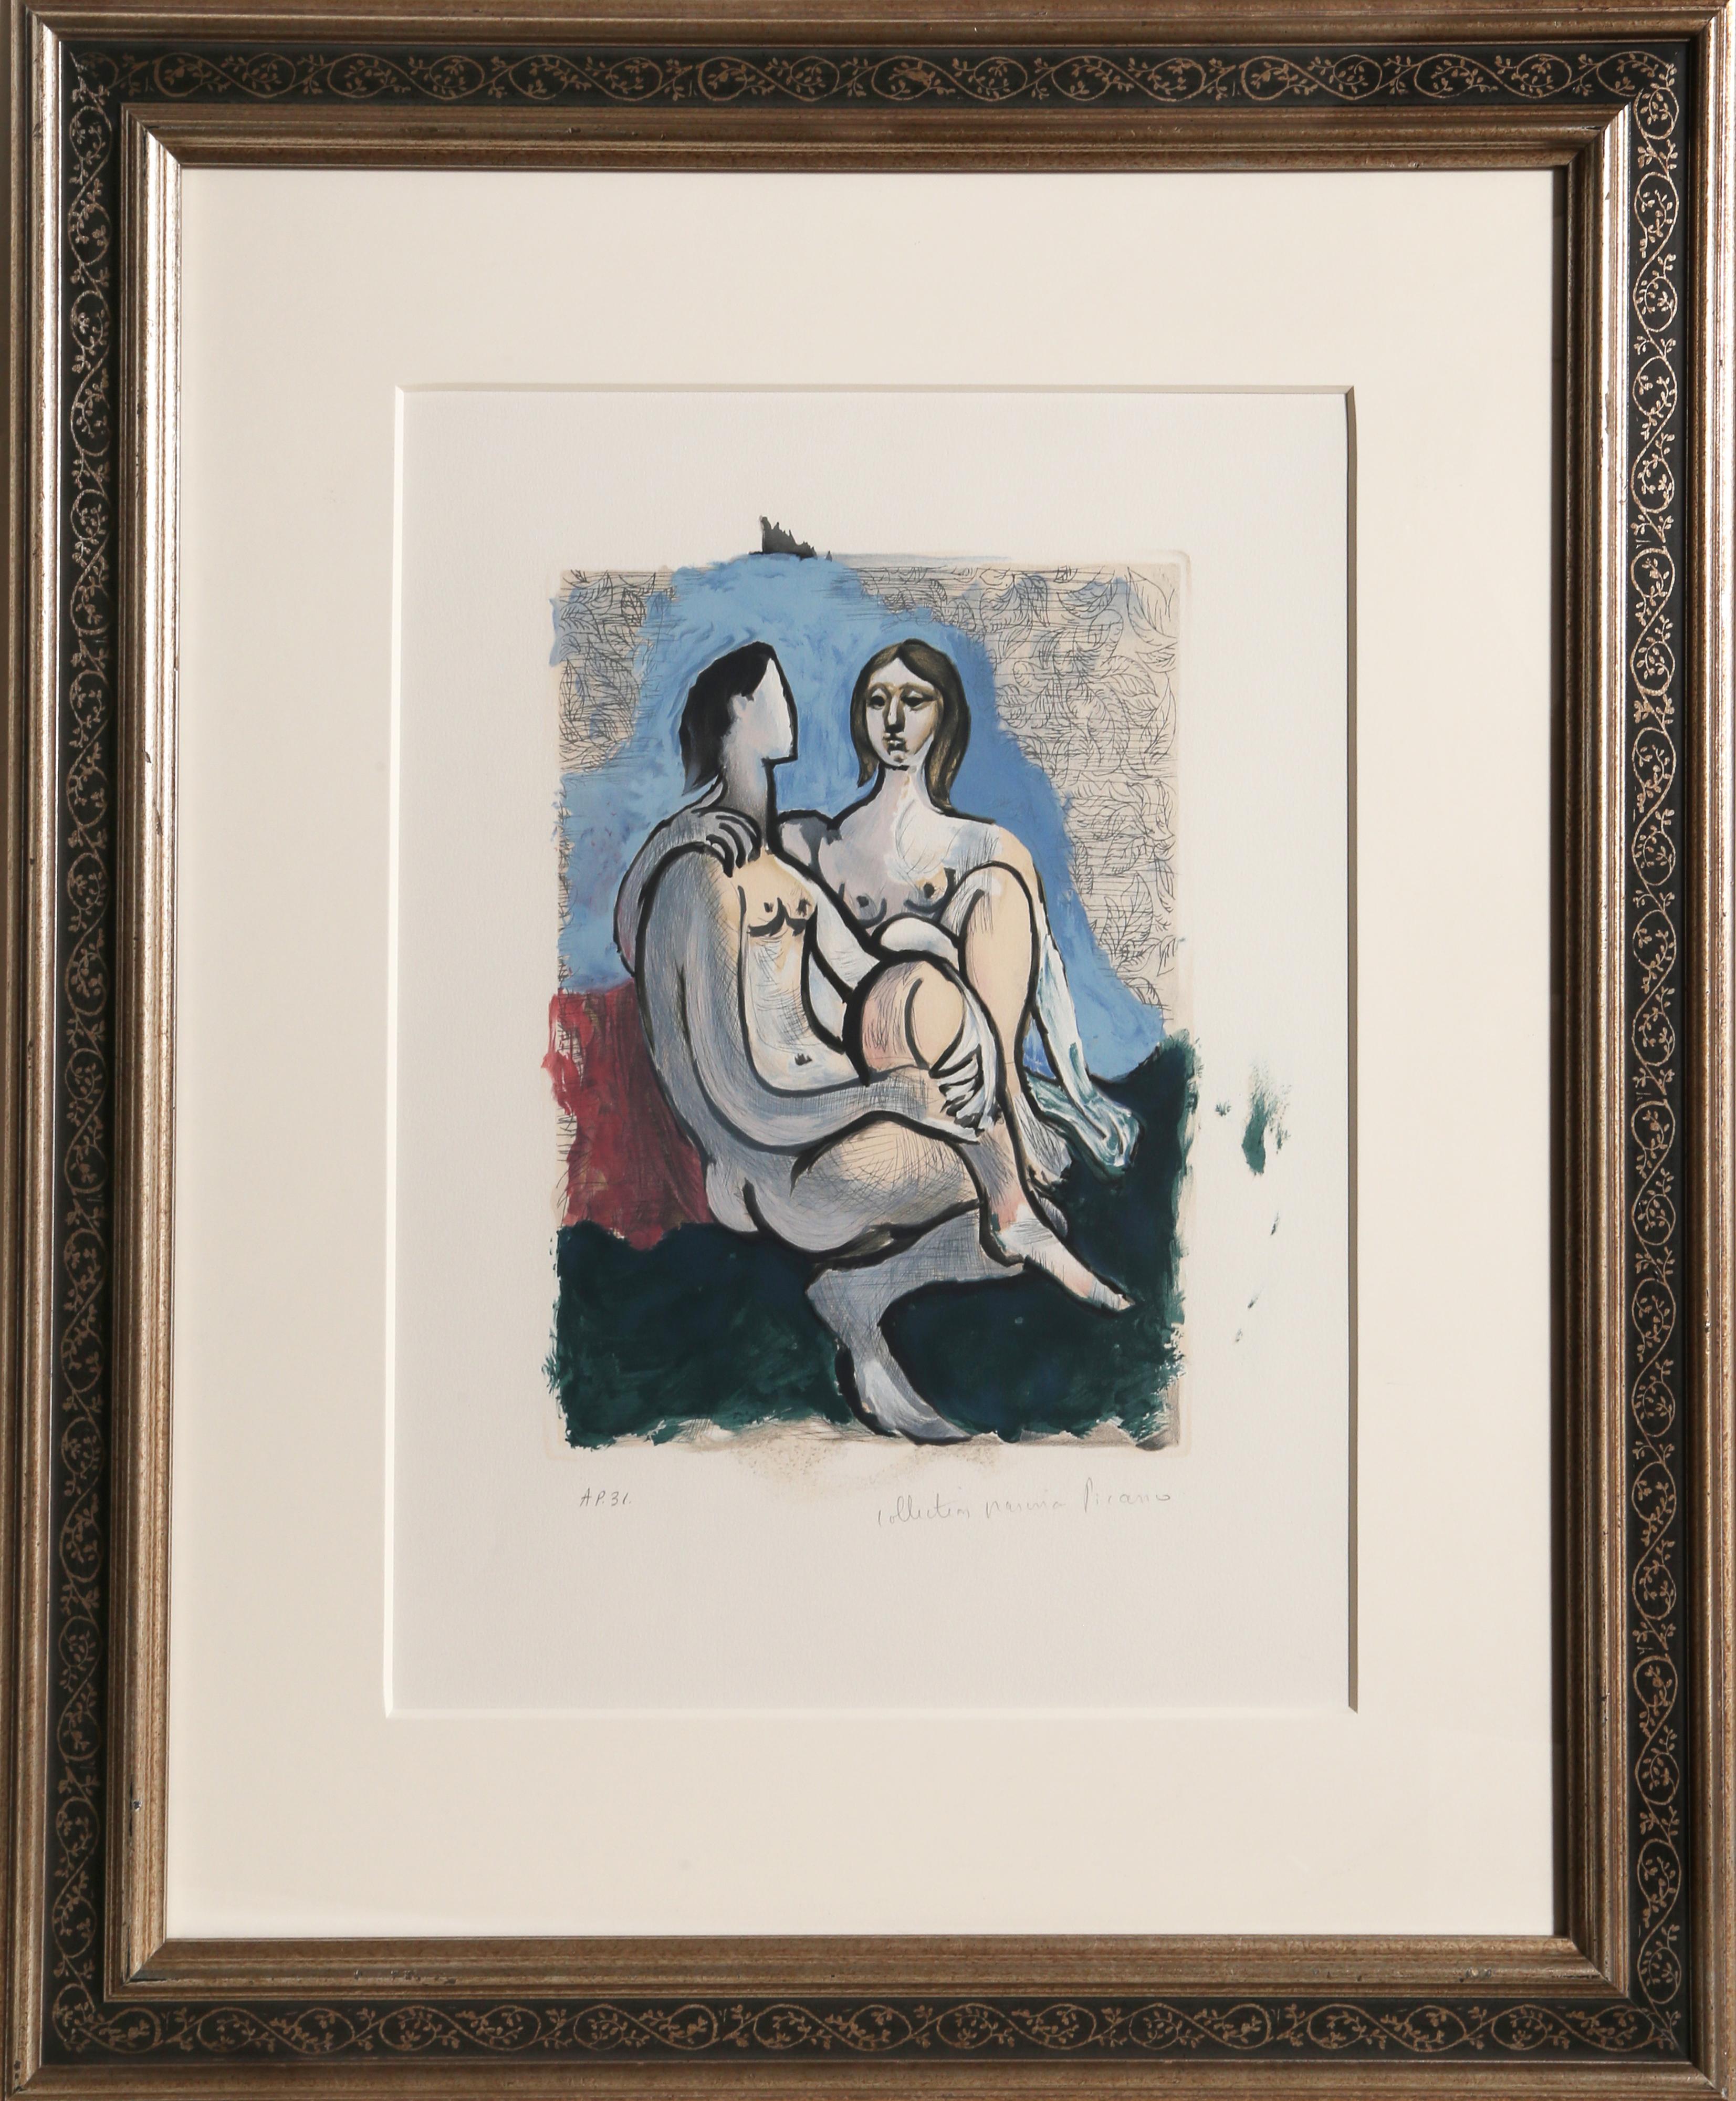 Eine Lithographie aus der Marina Picasso Estate Collection nach dem Gemälde "La Couple" von Pablo Picasso. Das Originalgemälde wurde im Jahr 193o fertiggestellt. In den 1970er Jahren, nach Picassos Tod, autorisierte Marina Picasso, seine Enkelin,